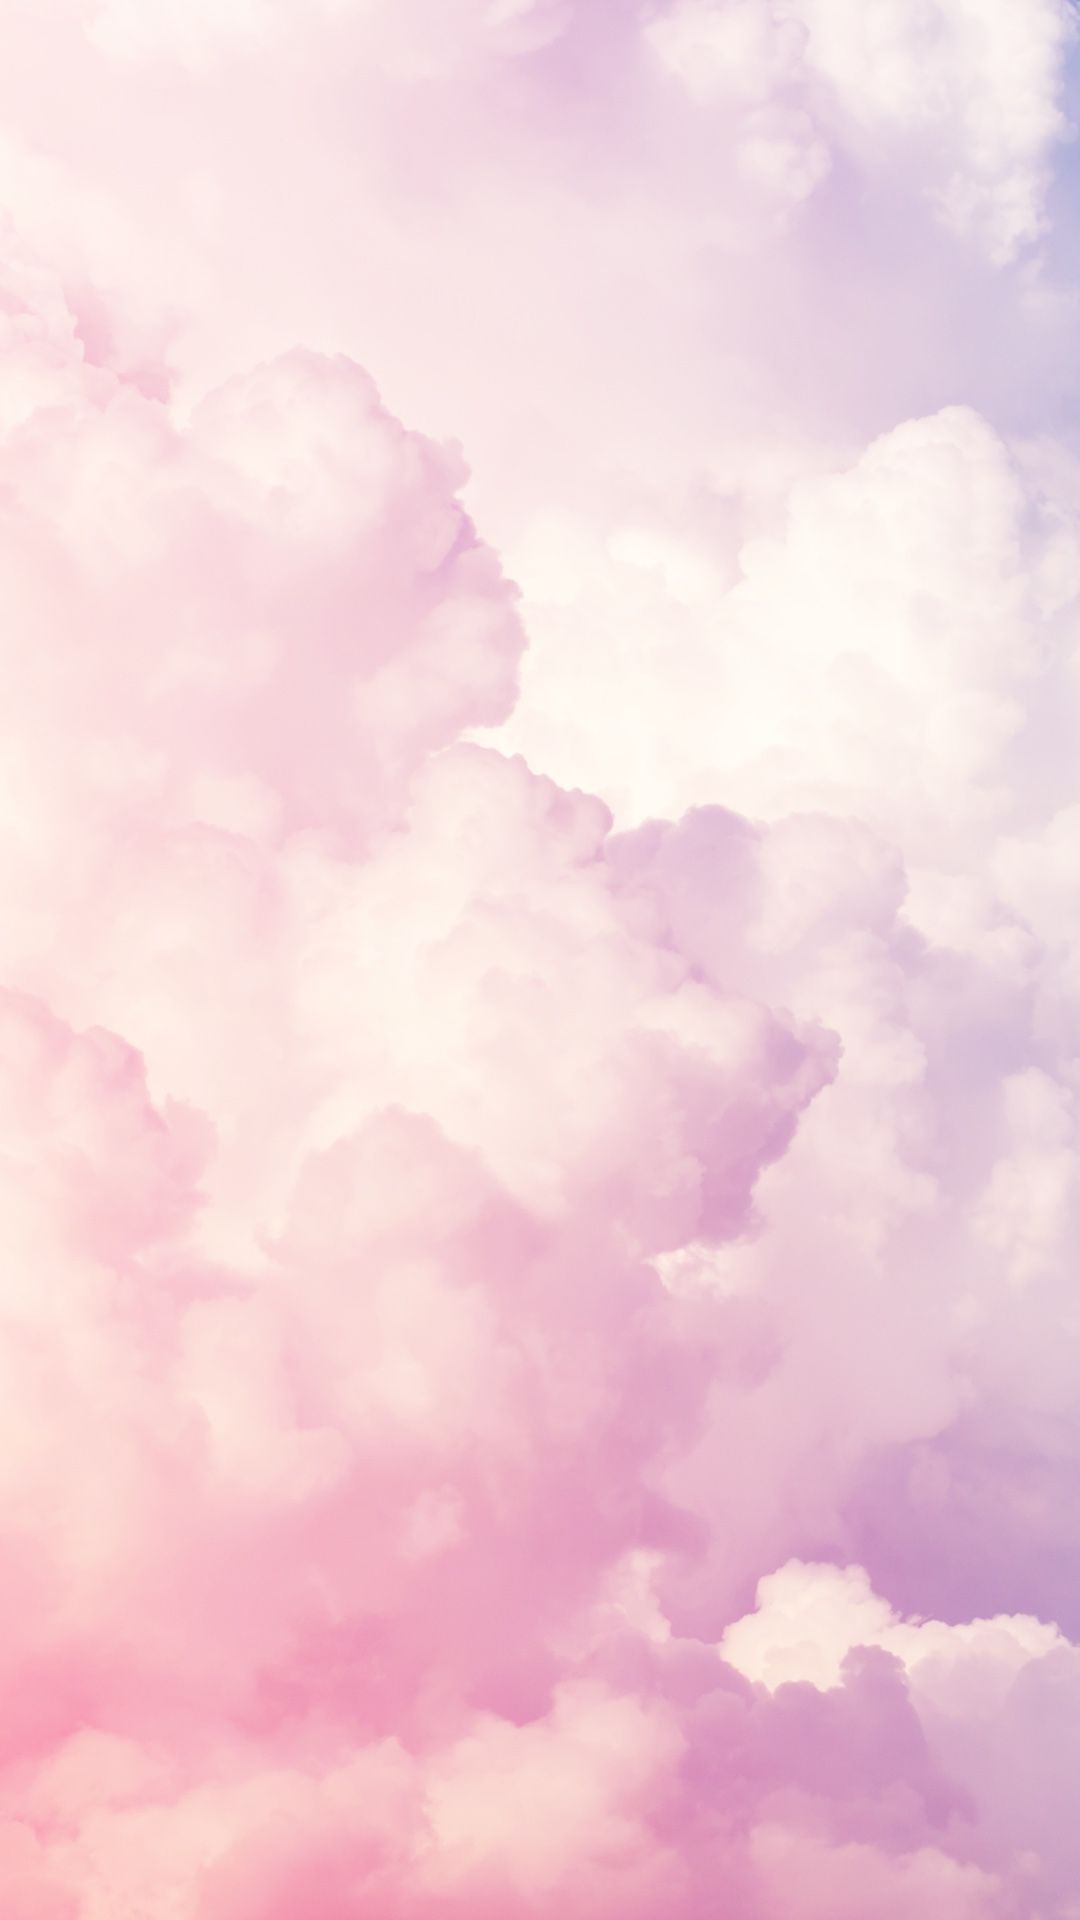 Pink clouds wallpaper. Pink clouds wallpaper, Clouds wallpaper iphone, Pink wallpaper iphone